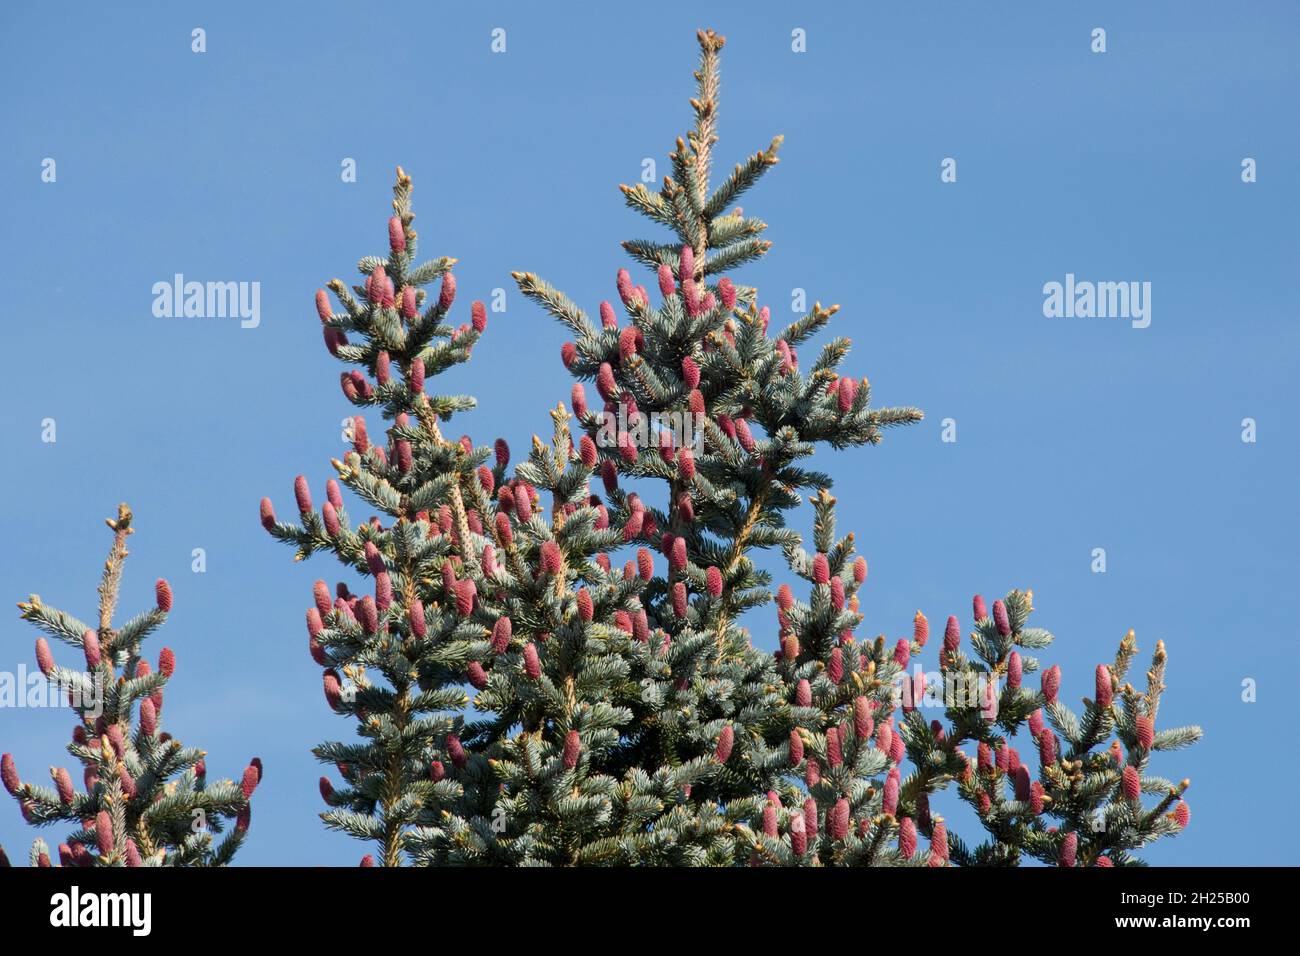 Cônes immatures rouges d'épinette bleue (Picea pungens) au sommet d'un arbre à feuillage bleu, gris-vert, au printemps, Berkshire, mai Banque D'Images